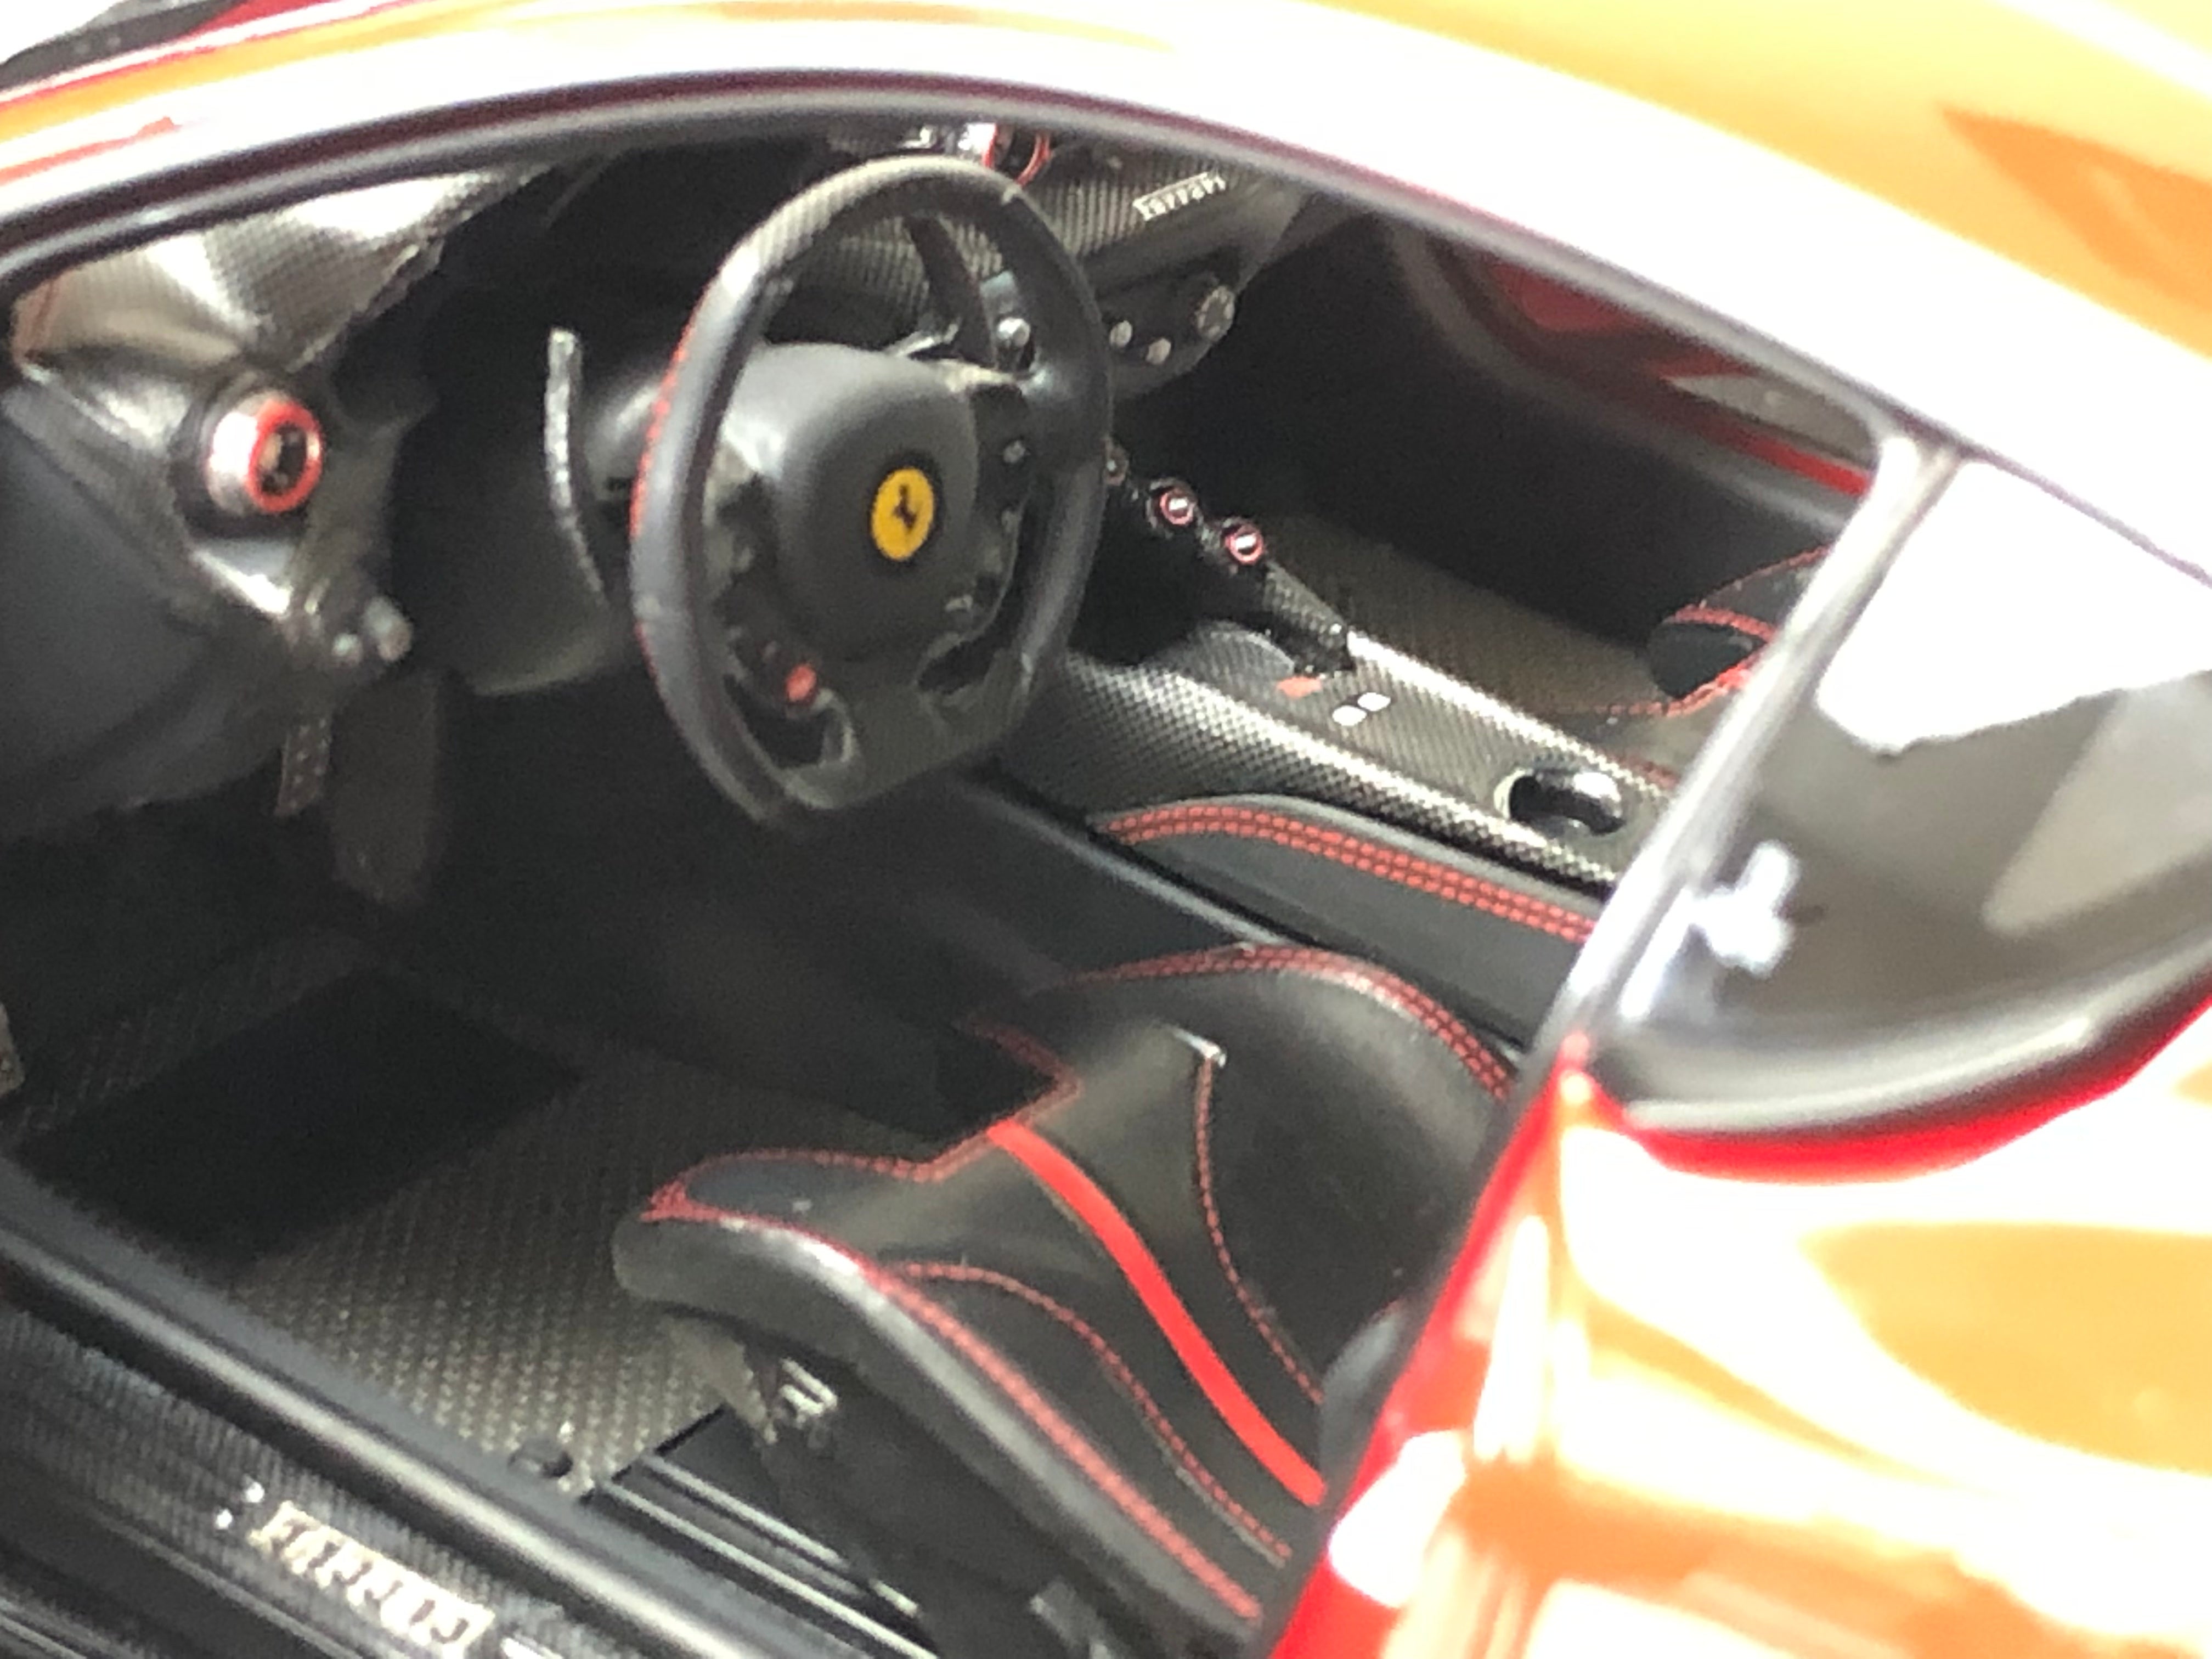 BBR 1:18 scale Ferrari F12 TDF Rosso Corsa